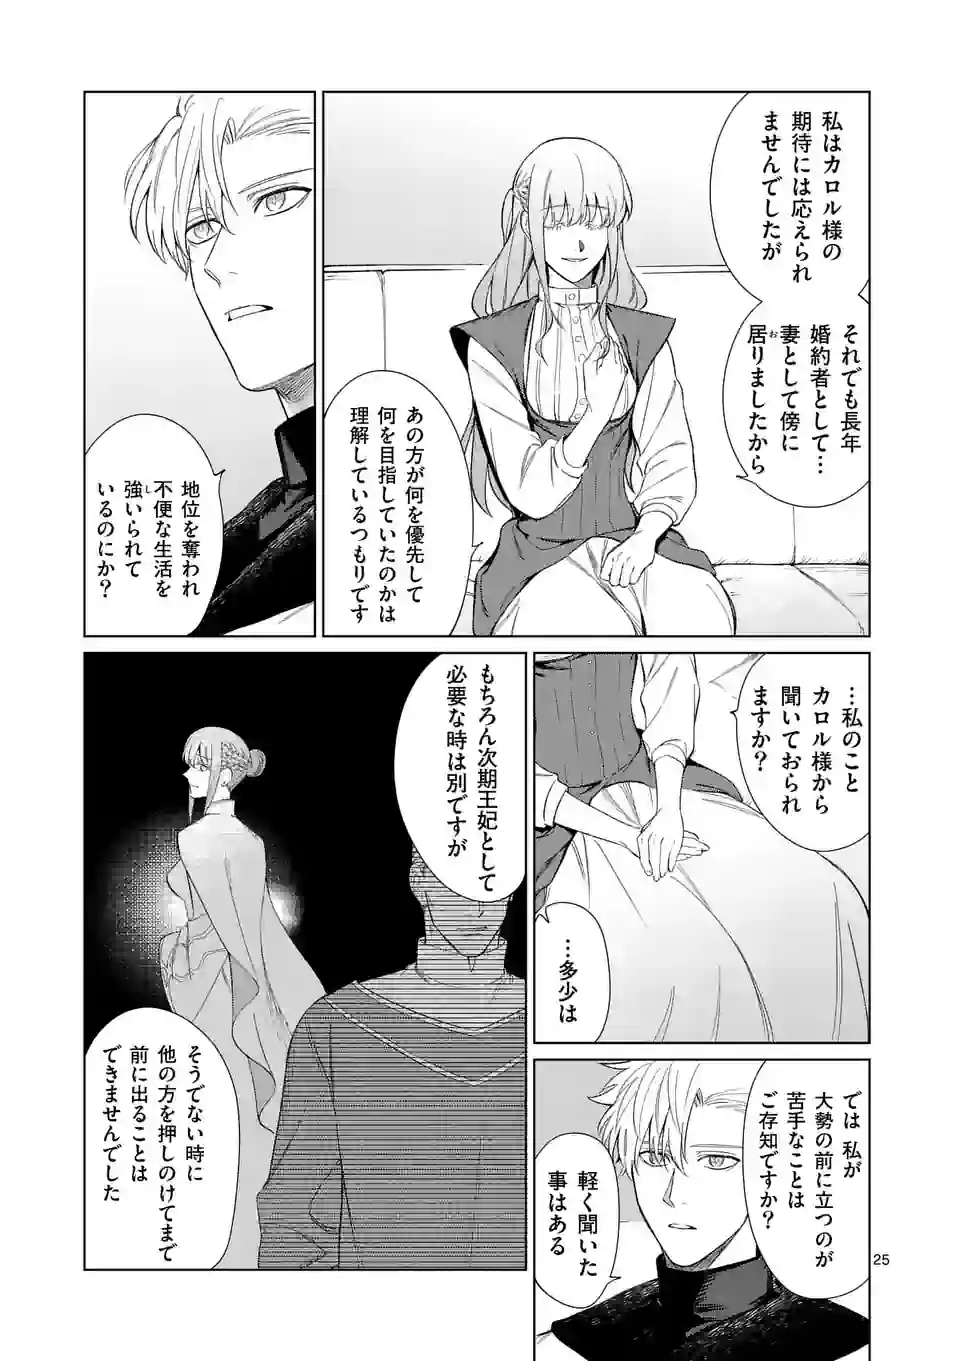 Mou Kyoumi ga Nai to Rikonsareta Reijou no Igai to Tanoshii Shinseikatsu - Chapter 2.5 - Page 2